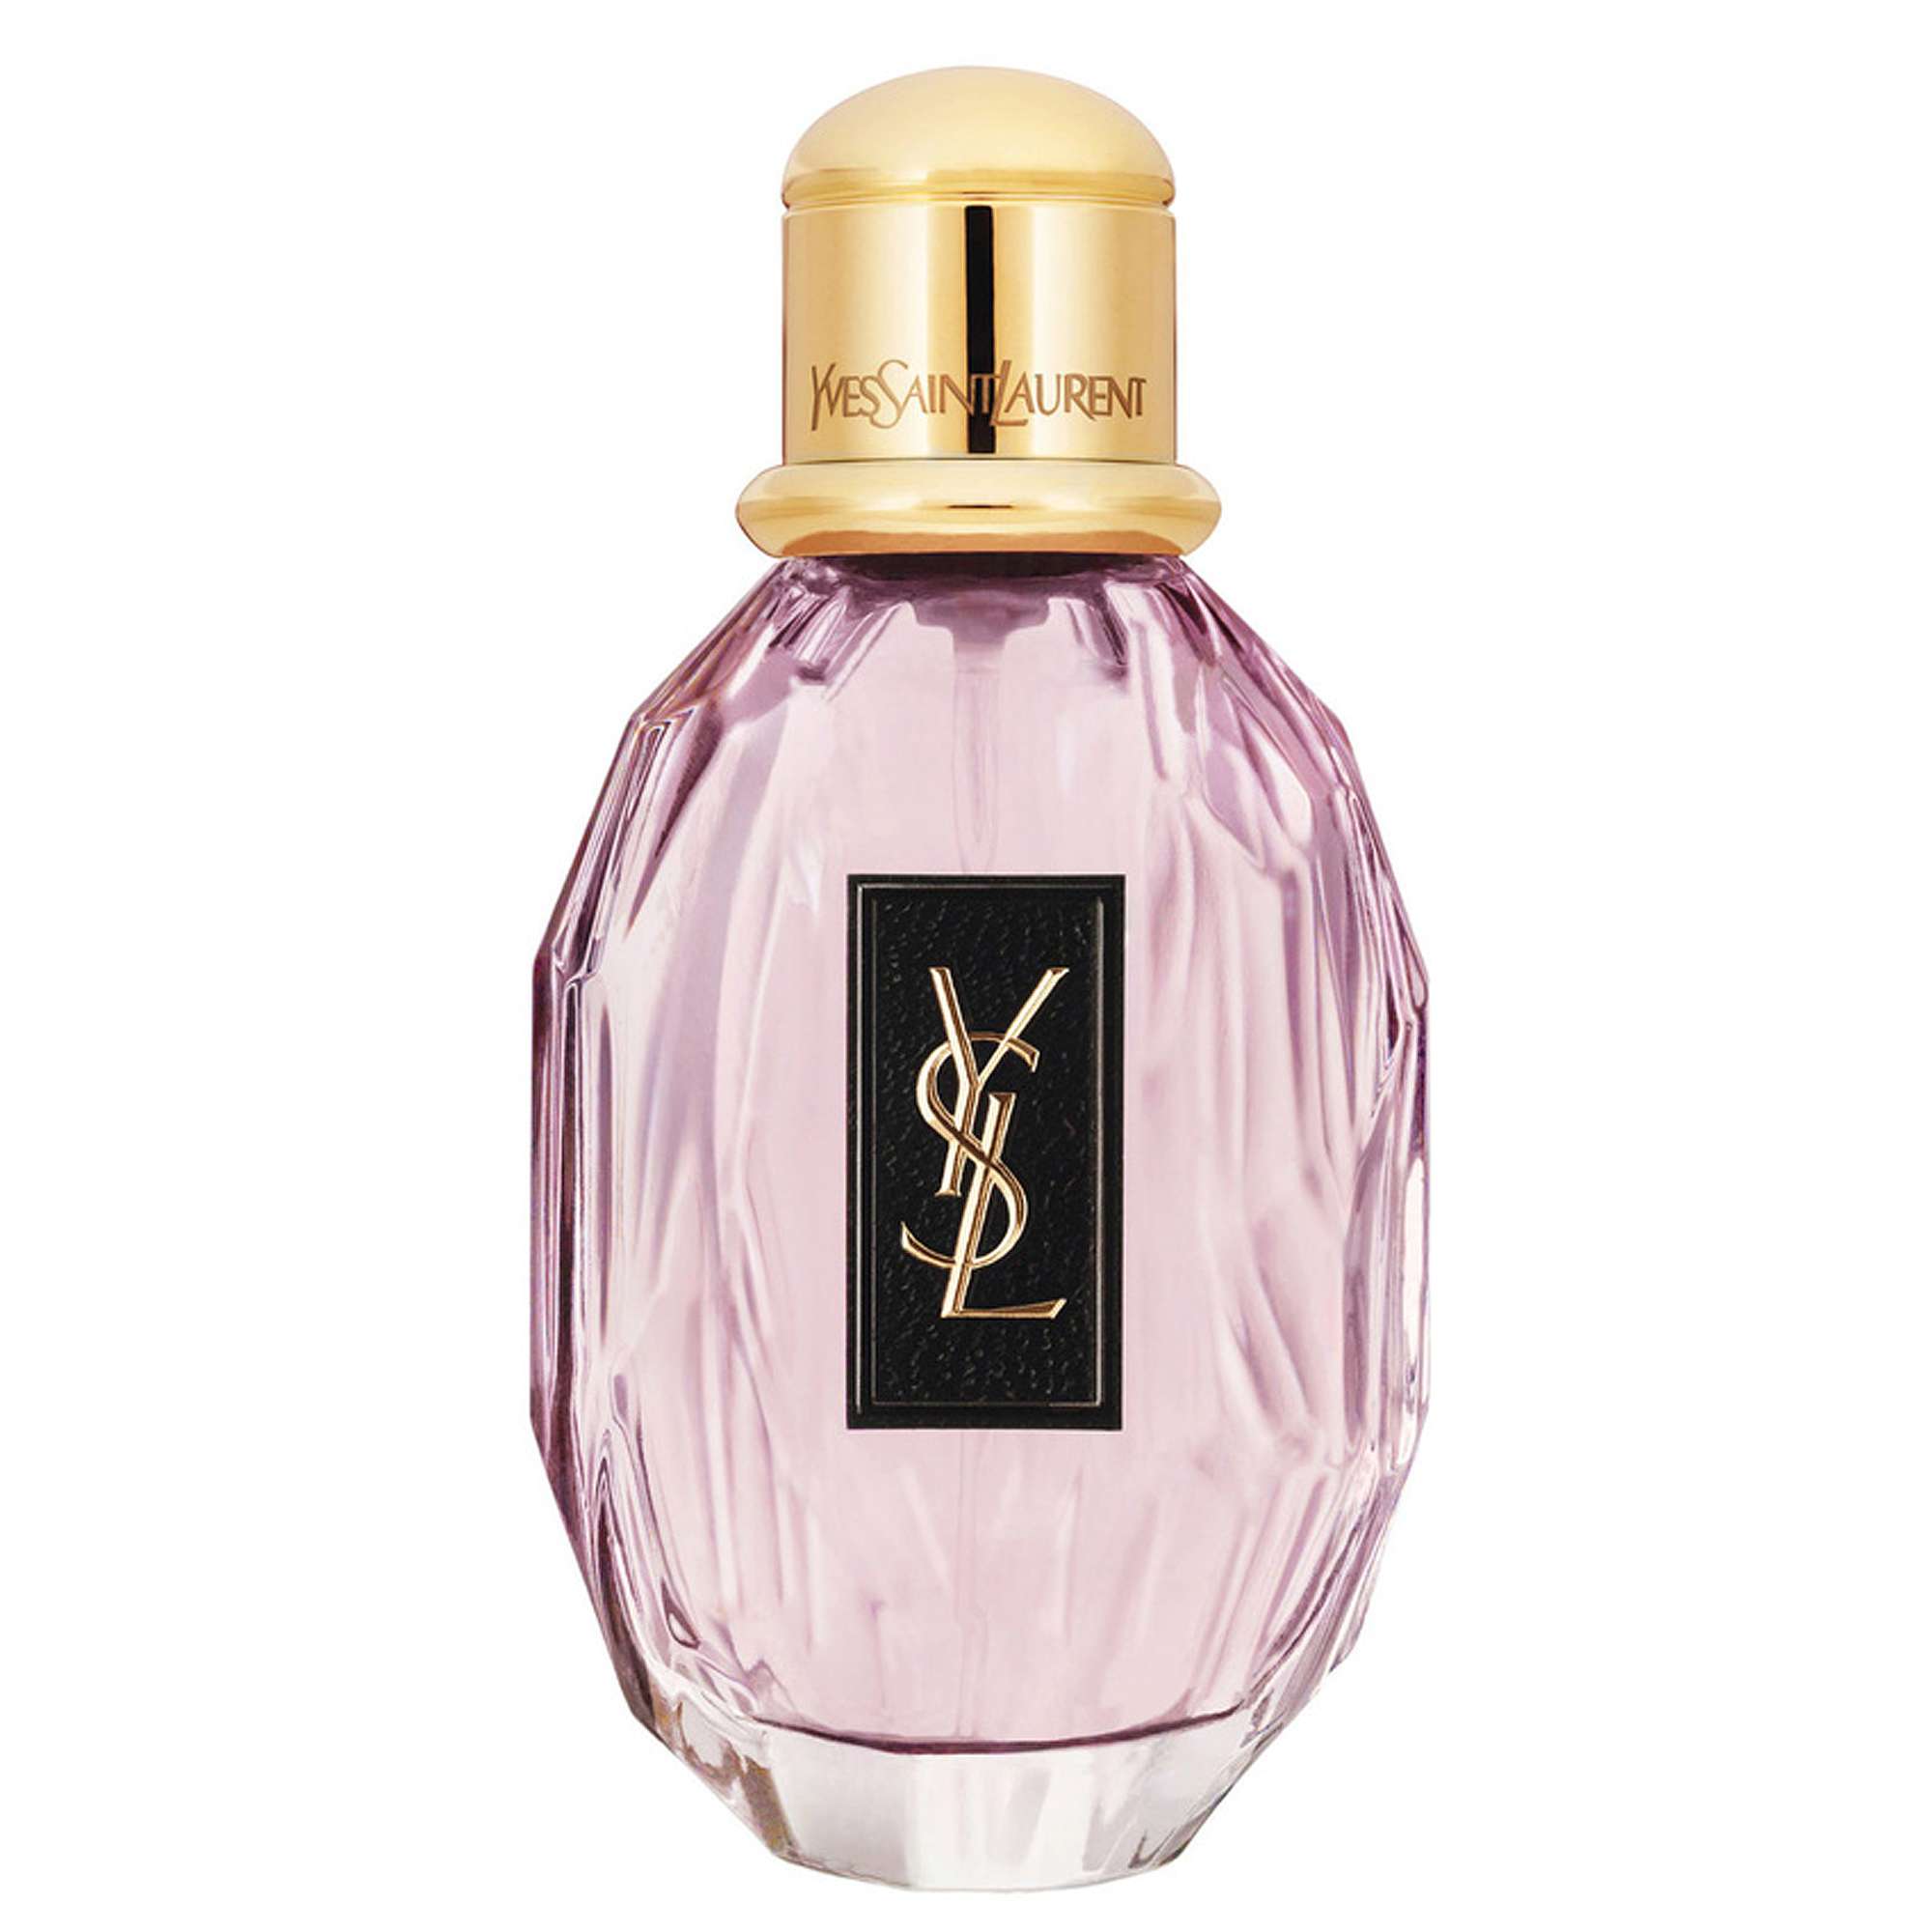 Photos - Women's Fragrance Yves Saint Laurent Paris Eau de Parfum Spray 90ml 